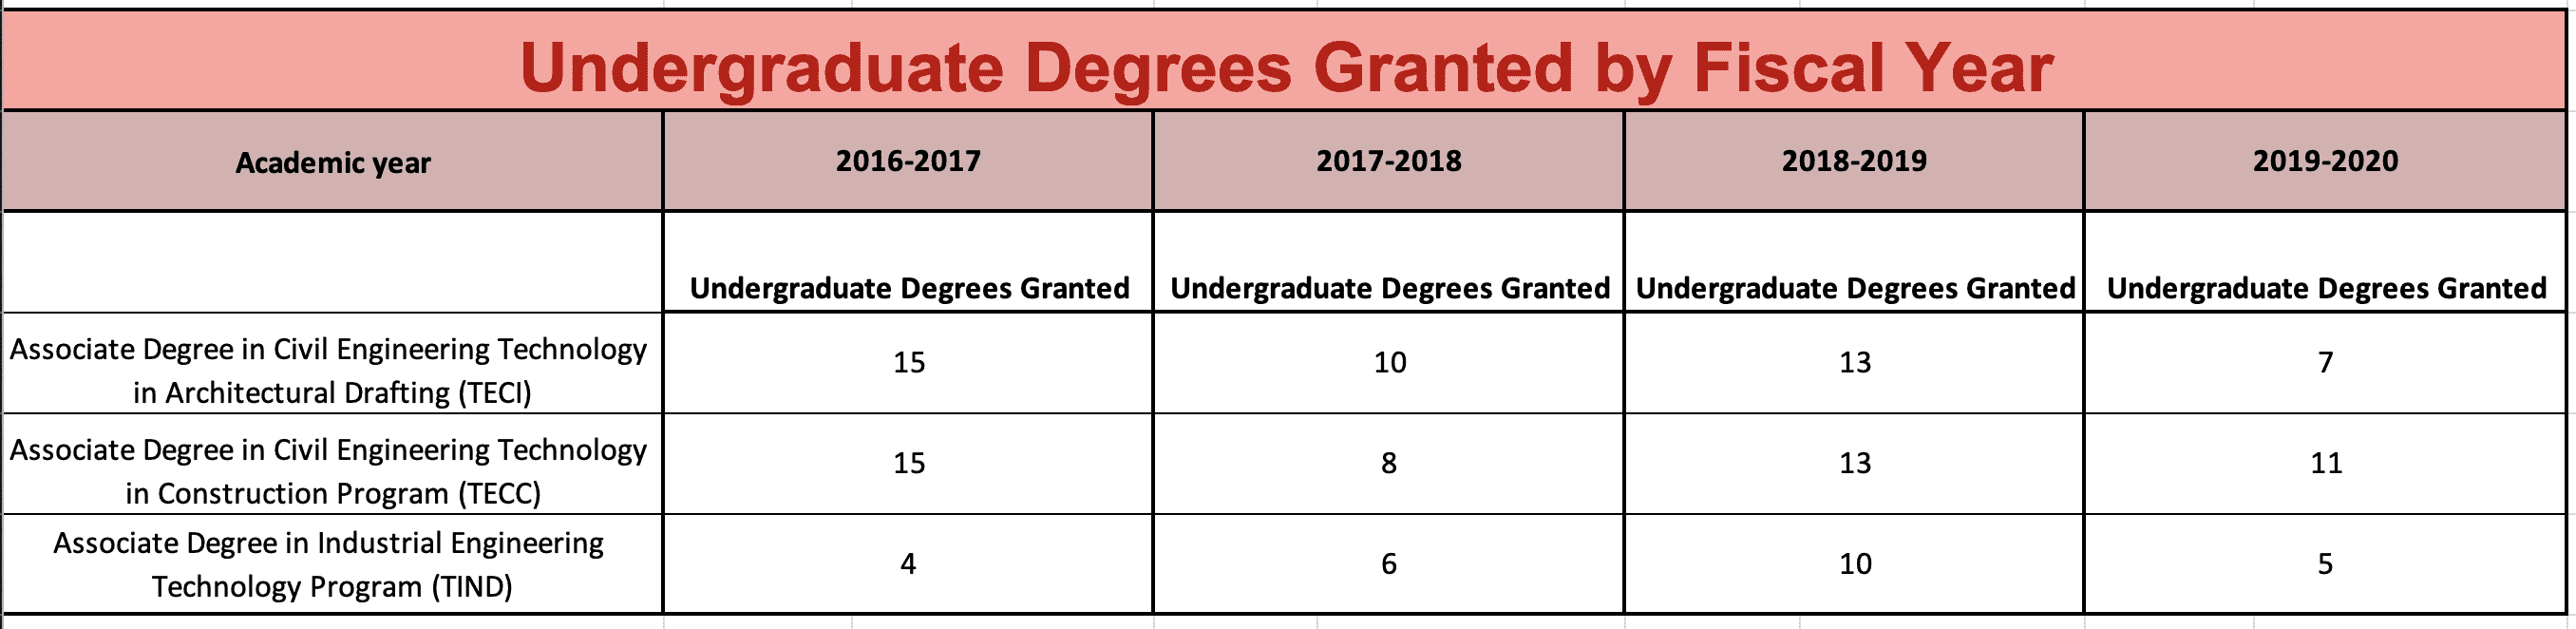 Undergraduate Degrees Granted